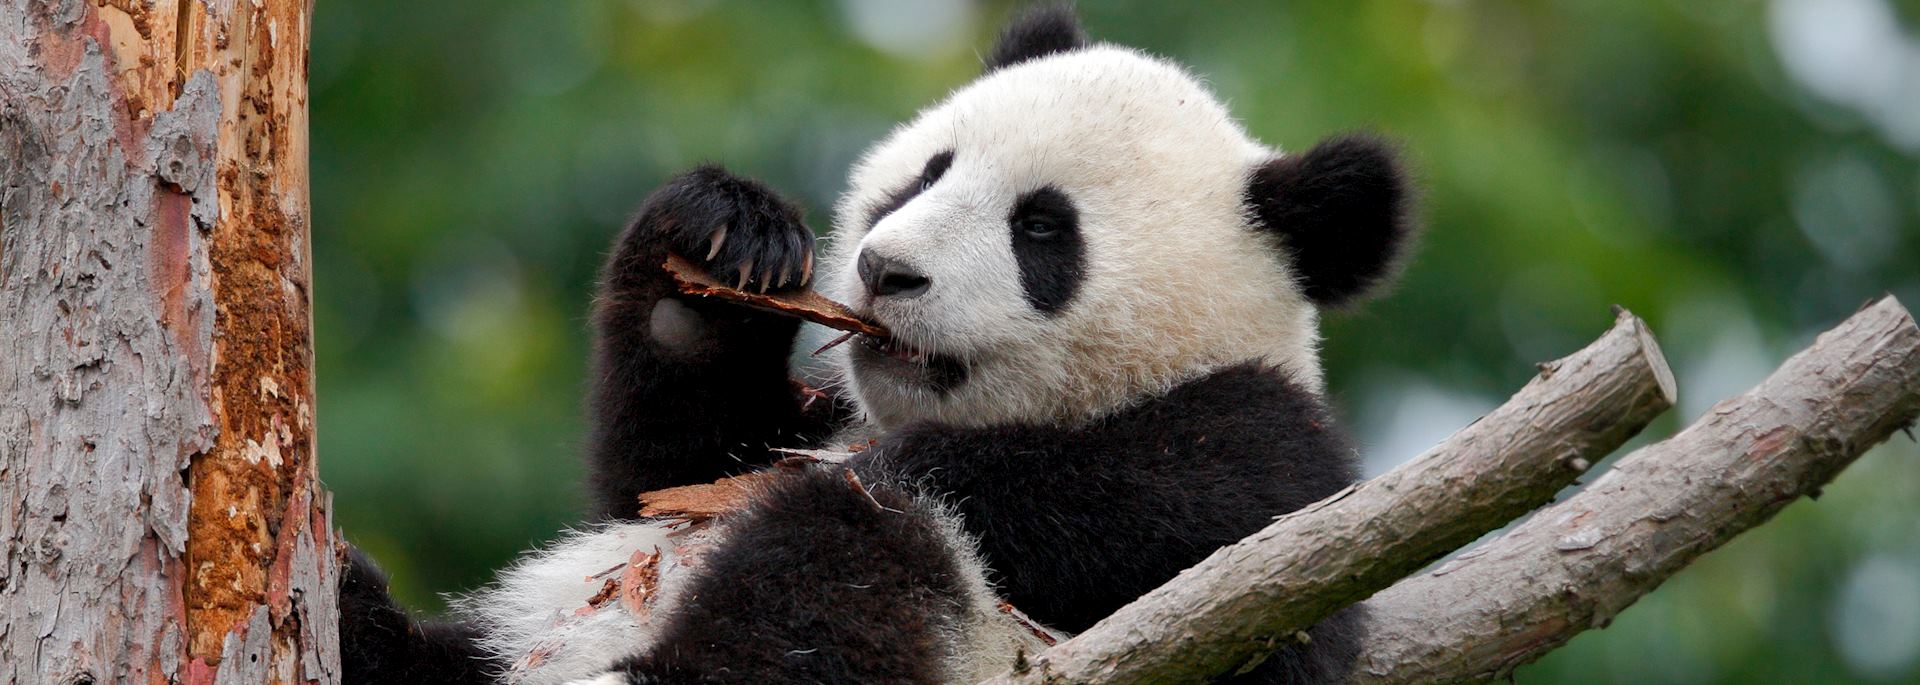 Young giant panda, Chengdu